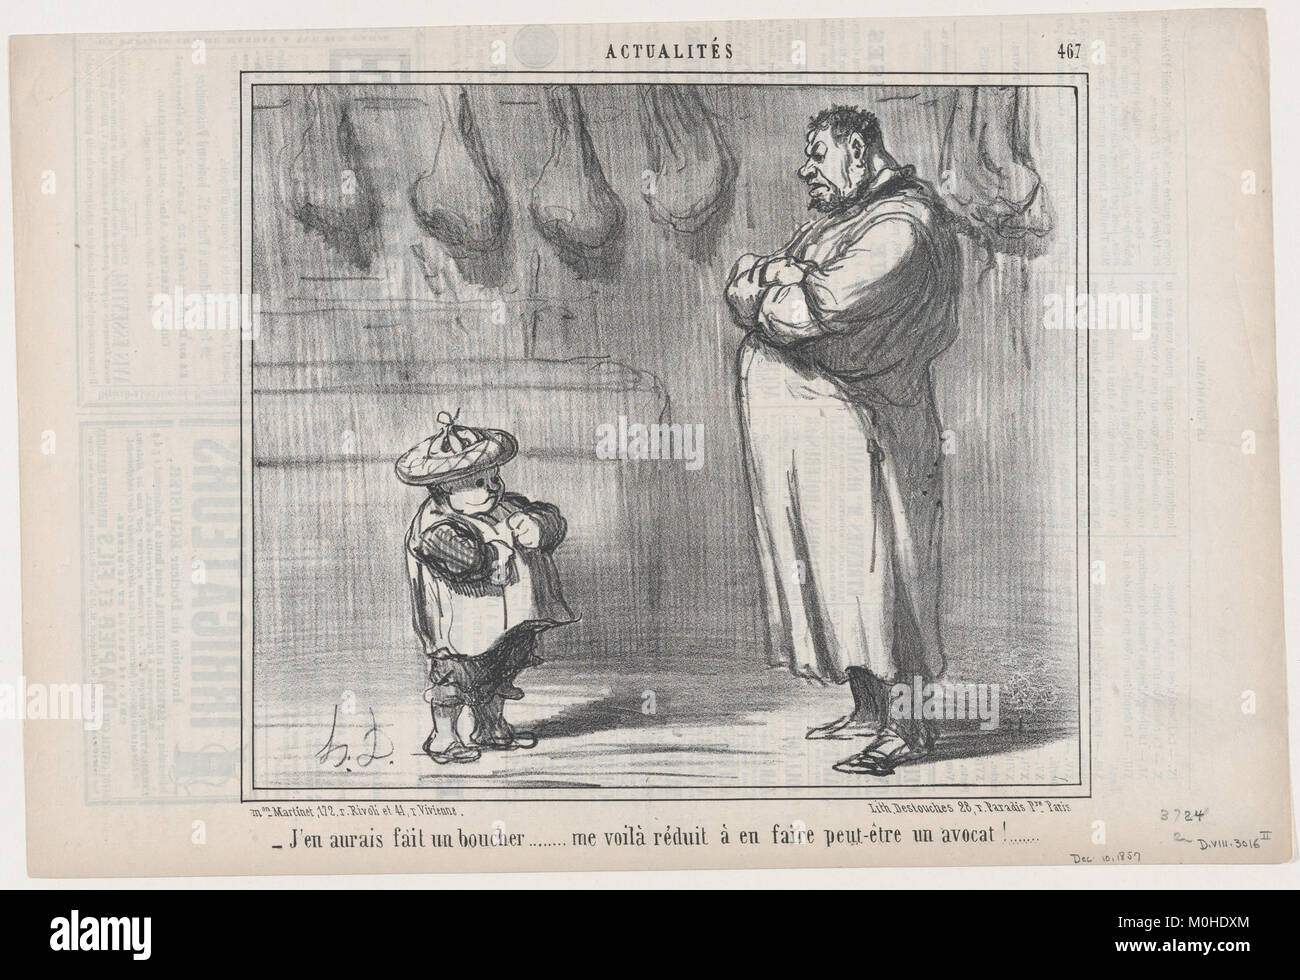 J'en aurais fait onu boucher..., da Actualités, pubblicato in Le Charivari, Dicembre 10, 1857 INCONTRATO DP876675 Foto Stock